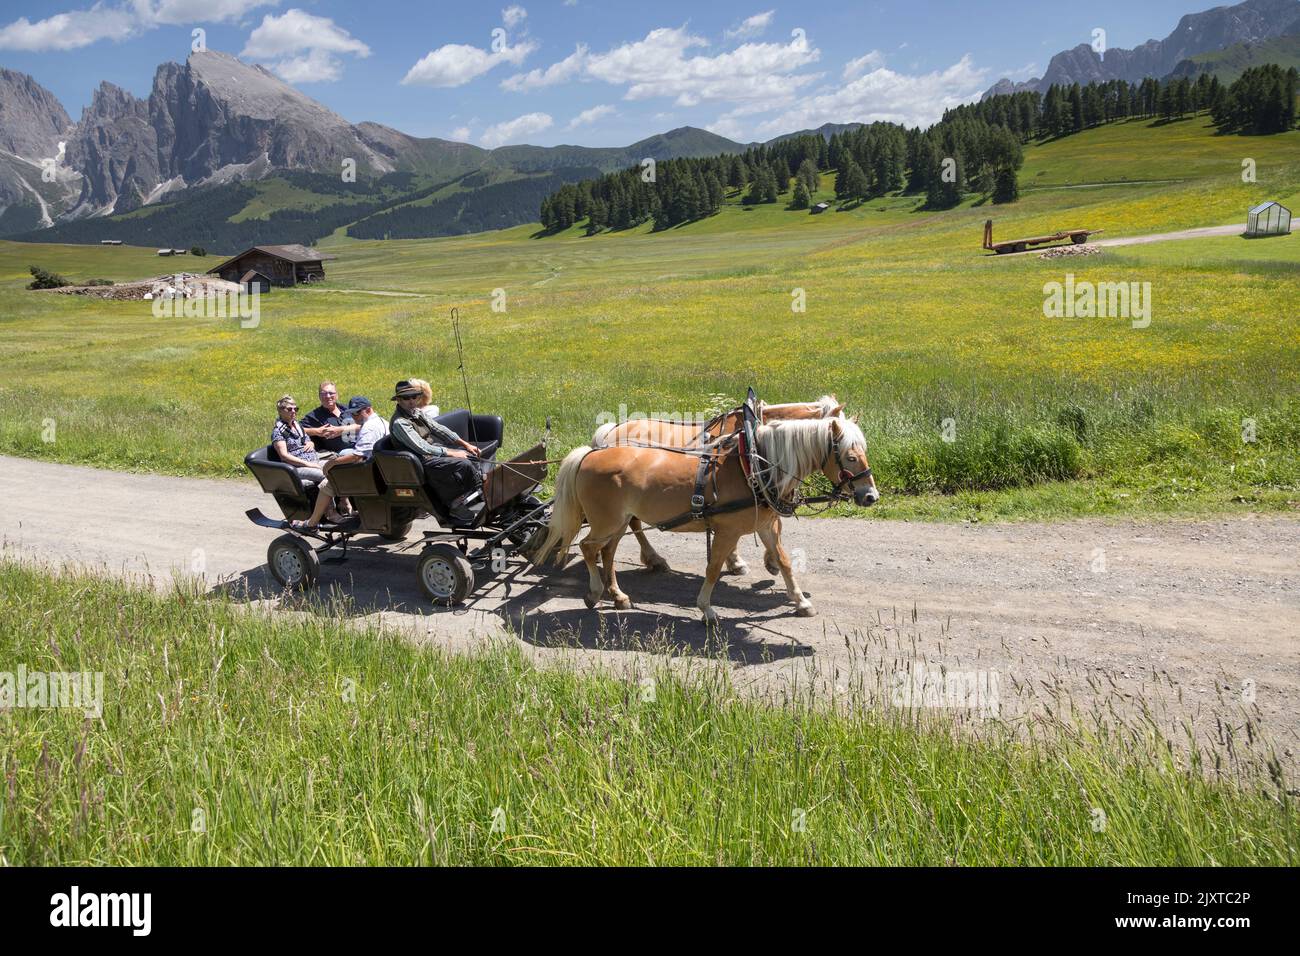 Un carro tradicional tirado por caballos transporta a los turistas a través de Alpi di Siusi en Val Gardena en las Dolomitas italianas. Foto de stock